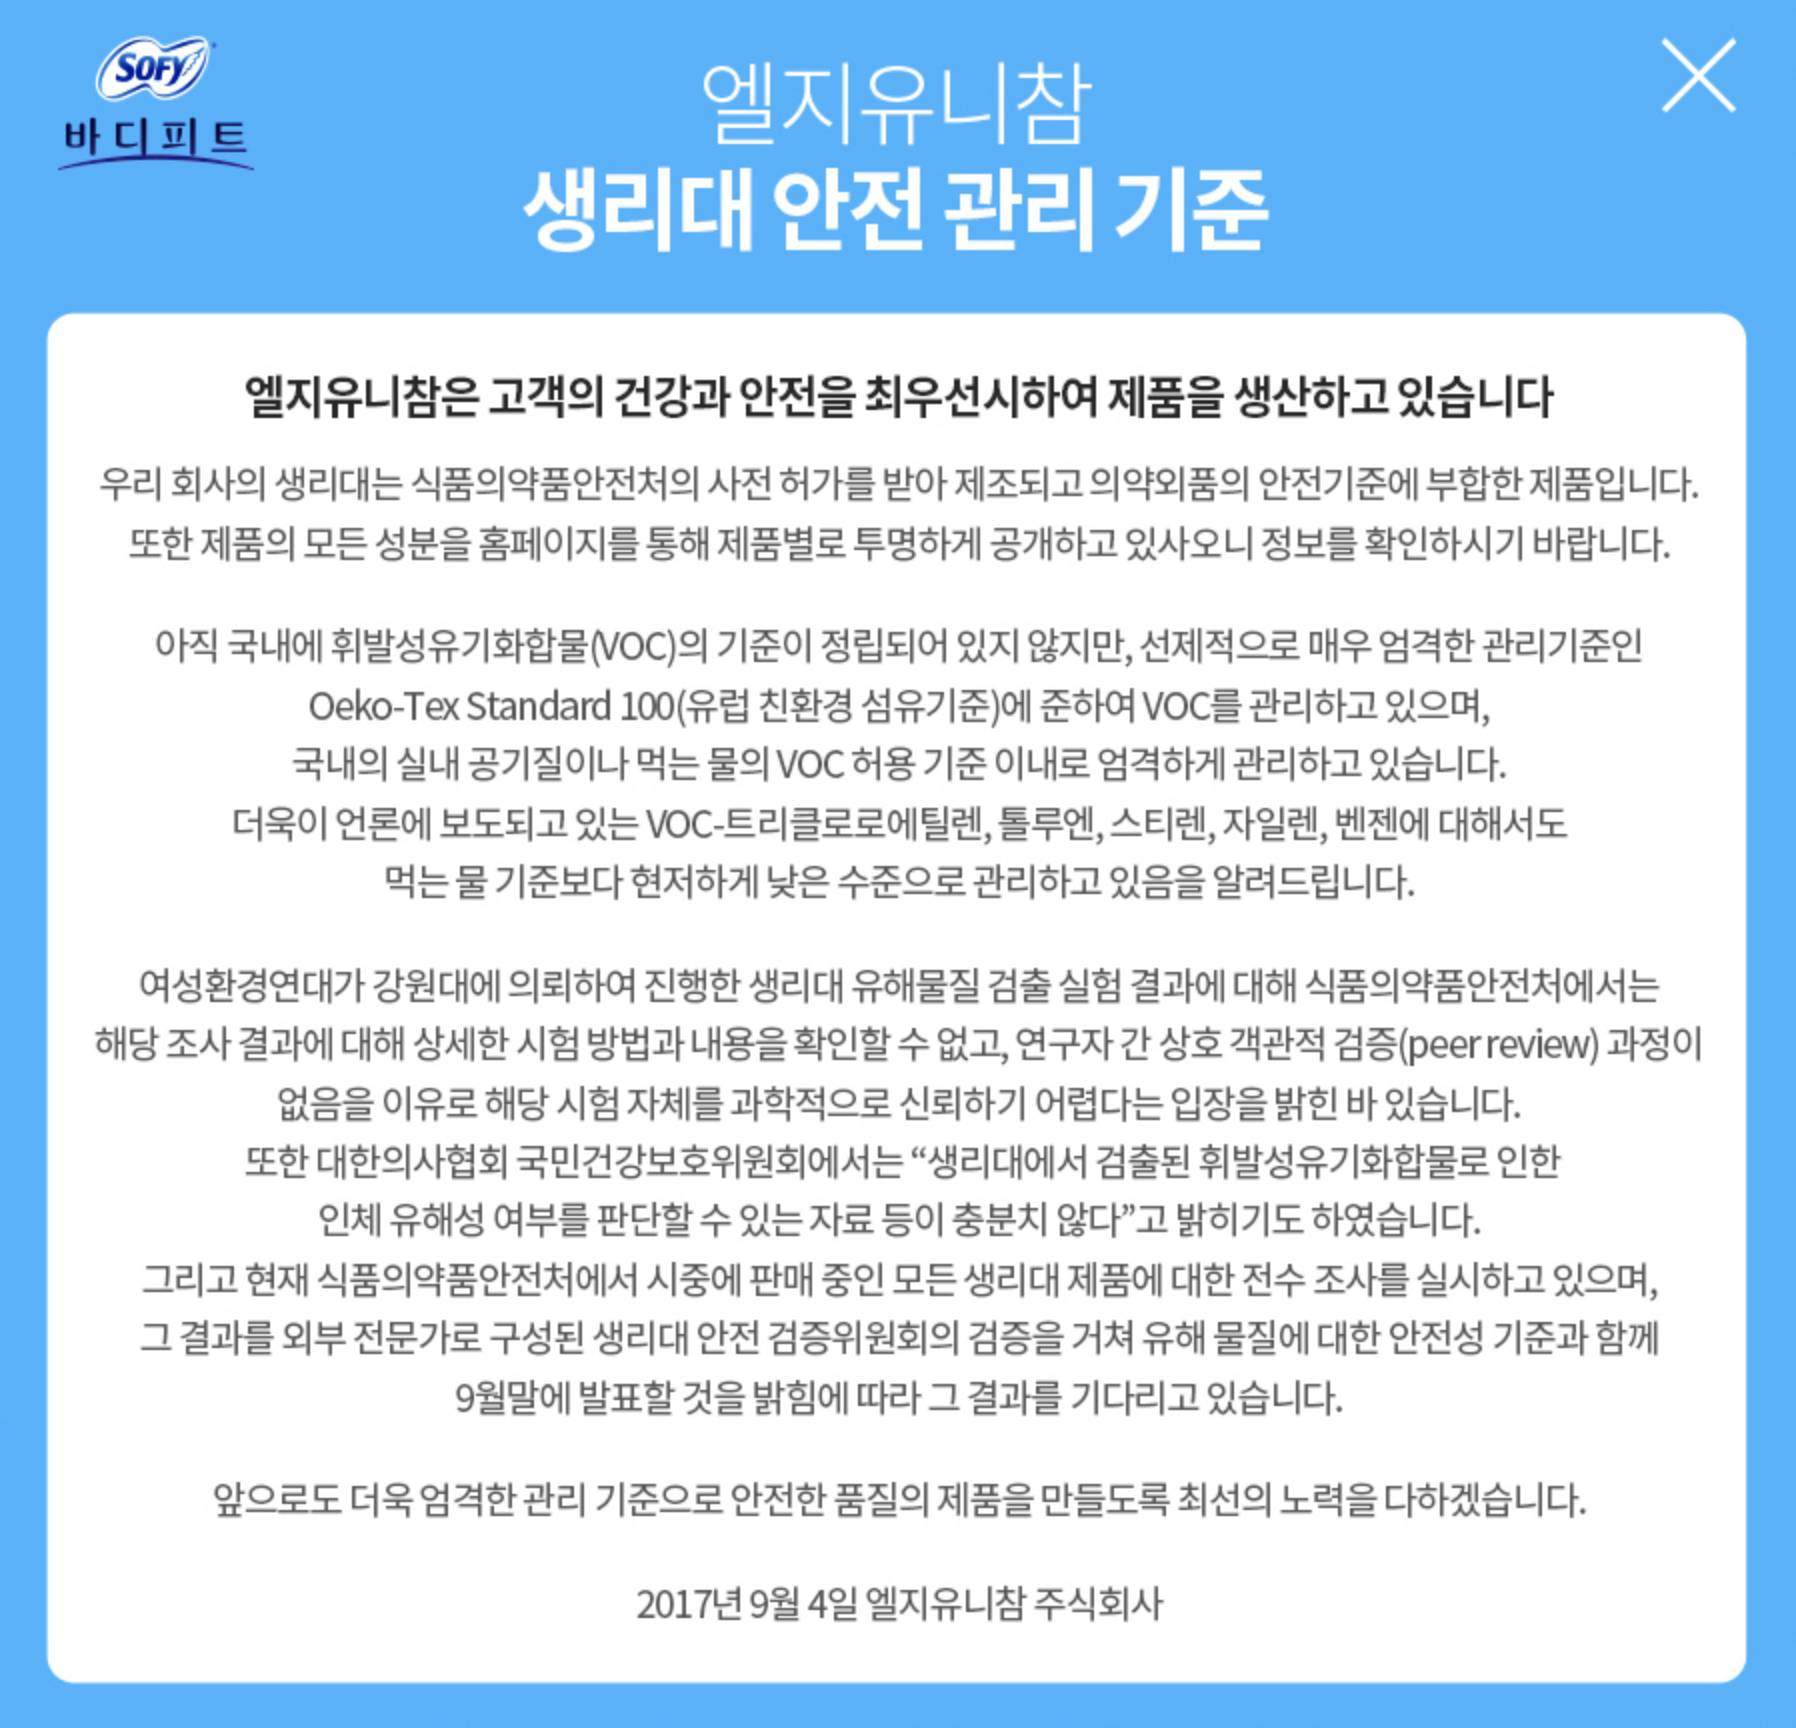 韓國衛生巾 SOFY網頁在9月4日發出聲明，指其生產的衛生巾沒有問題，9月頭的報導有漏洞，但就未有針對9月28日的報告作任何回應。